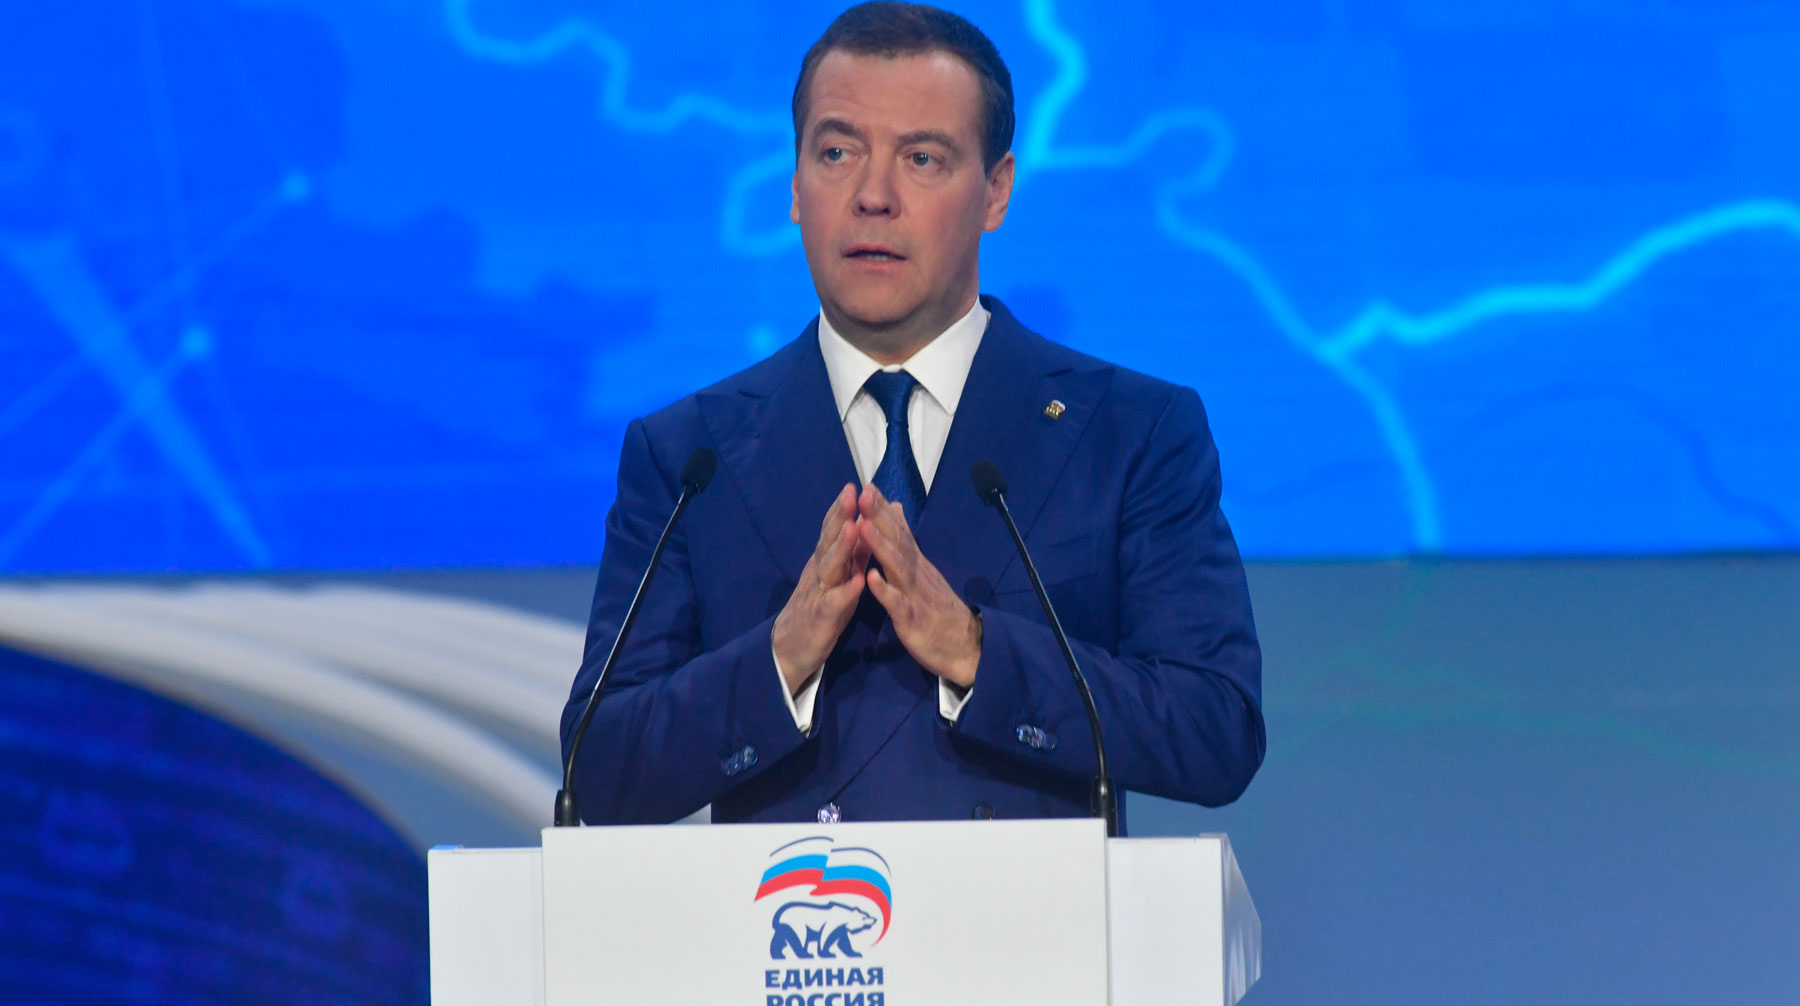 Медведев считает, что возглавляемая им партия «не работает в тепличных условиях, а реально завоевывает авторитет в поле» Фото: © Global Look Press / Комсомольская правда